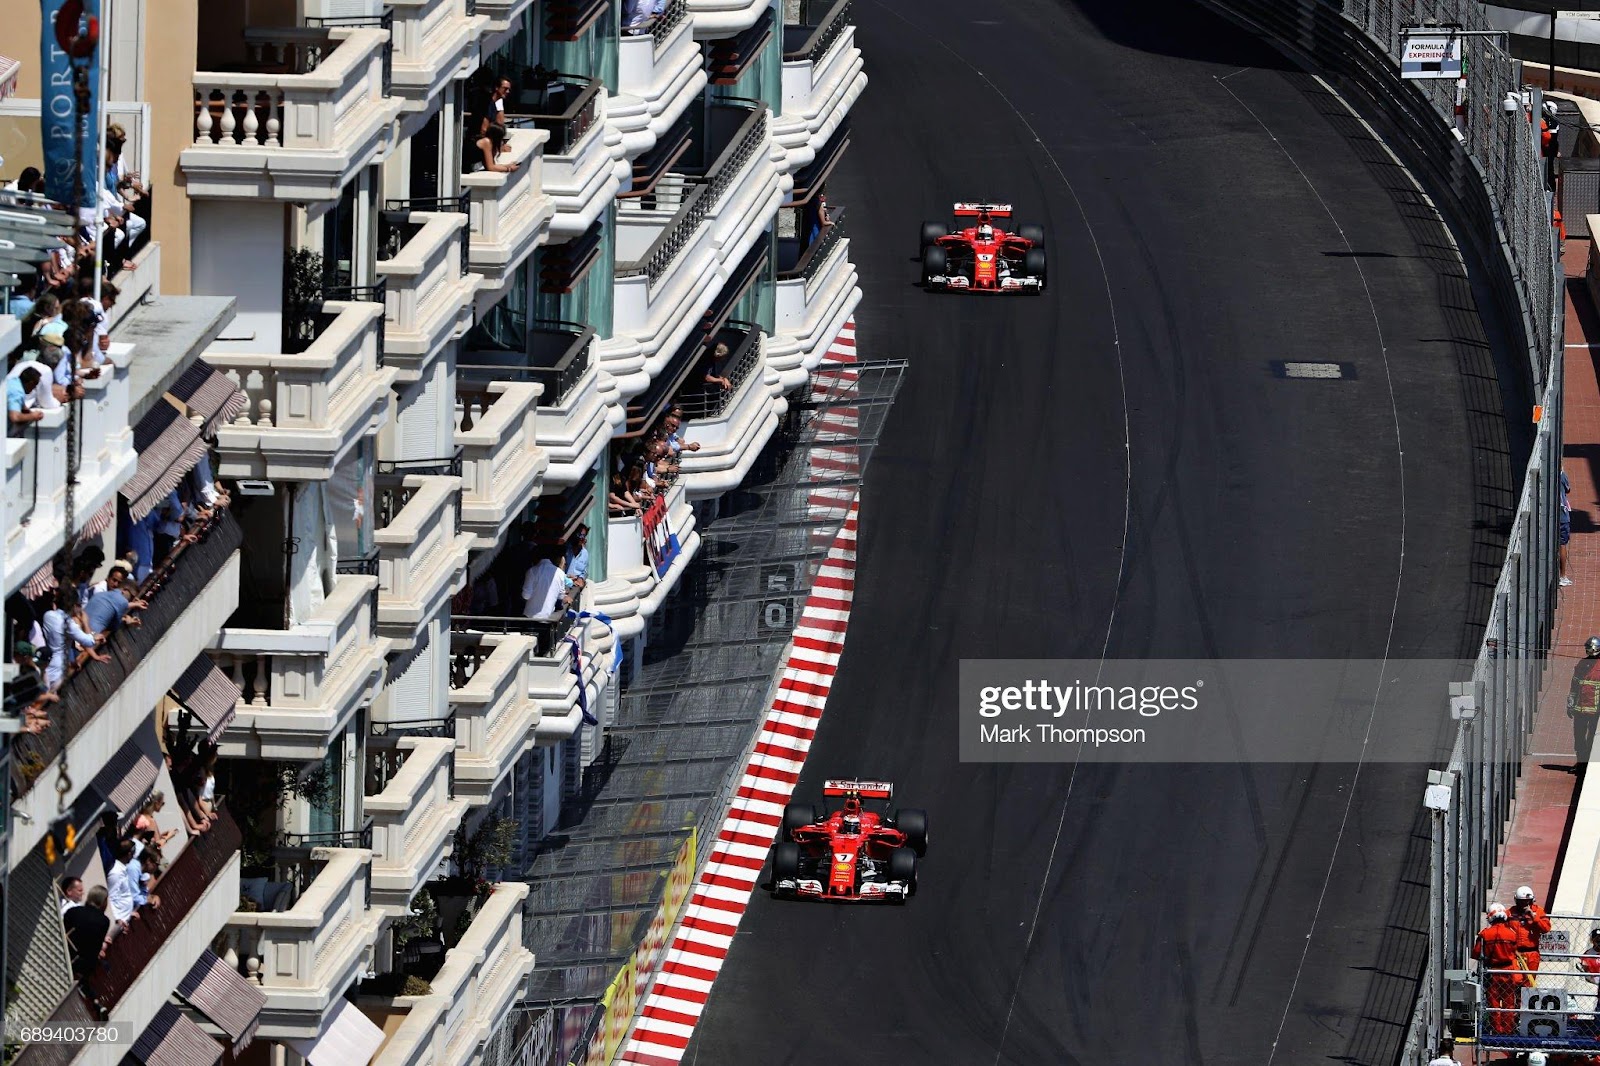 Kimi Raikkonen, driving the (7) Scuderia Ferrari SF70H, leads Sebastian Vettel, driving the (5) Scuderia Ferrari SF70H, on track during the Monaco F1 Grand Prix at Circuit de Monaco on May 28, 2017.